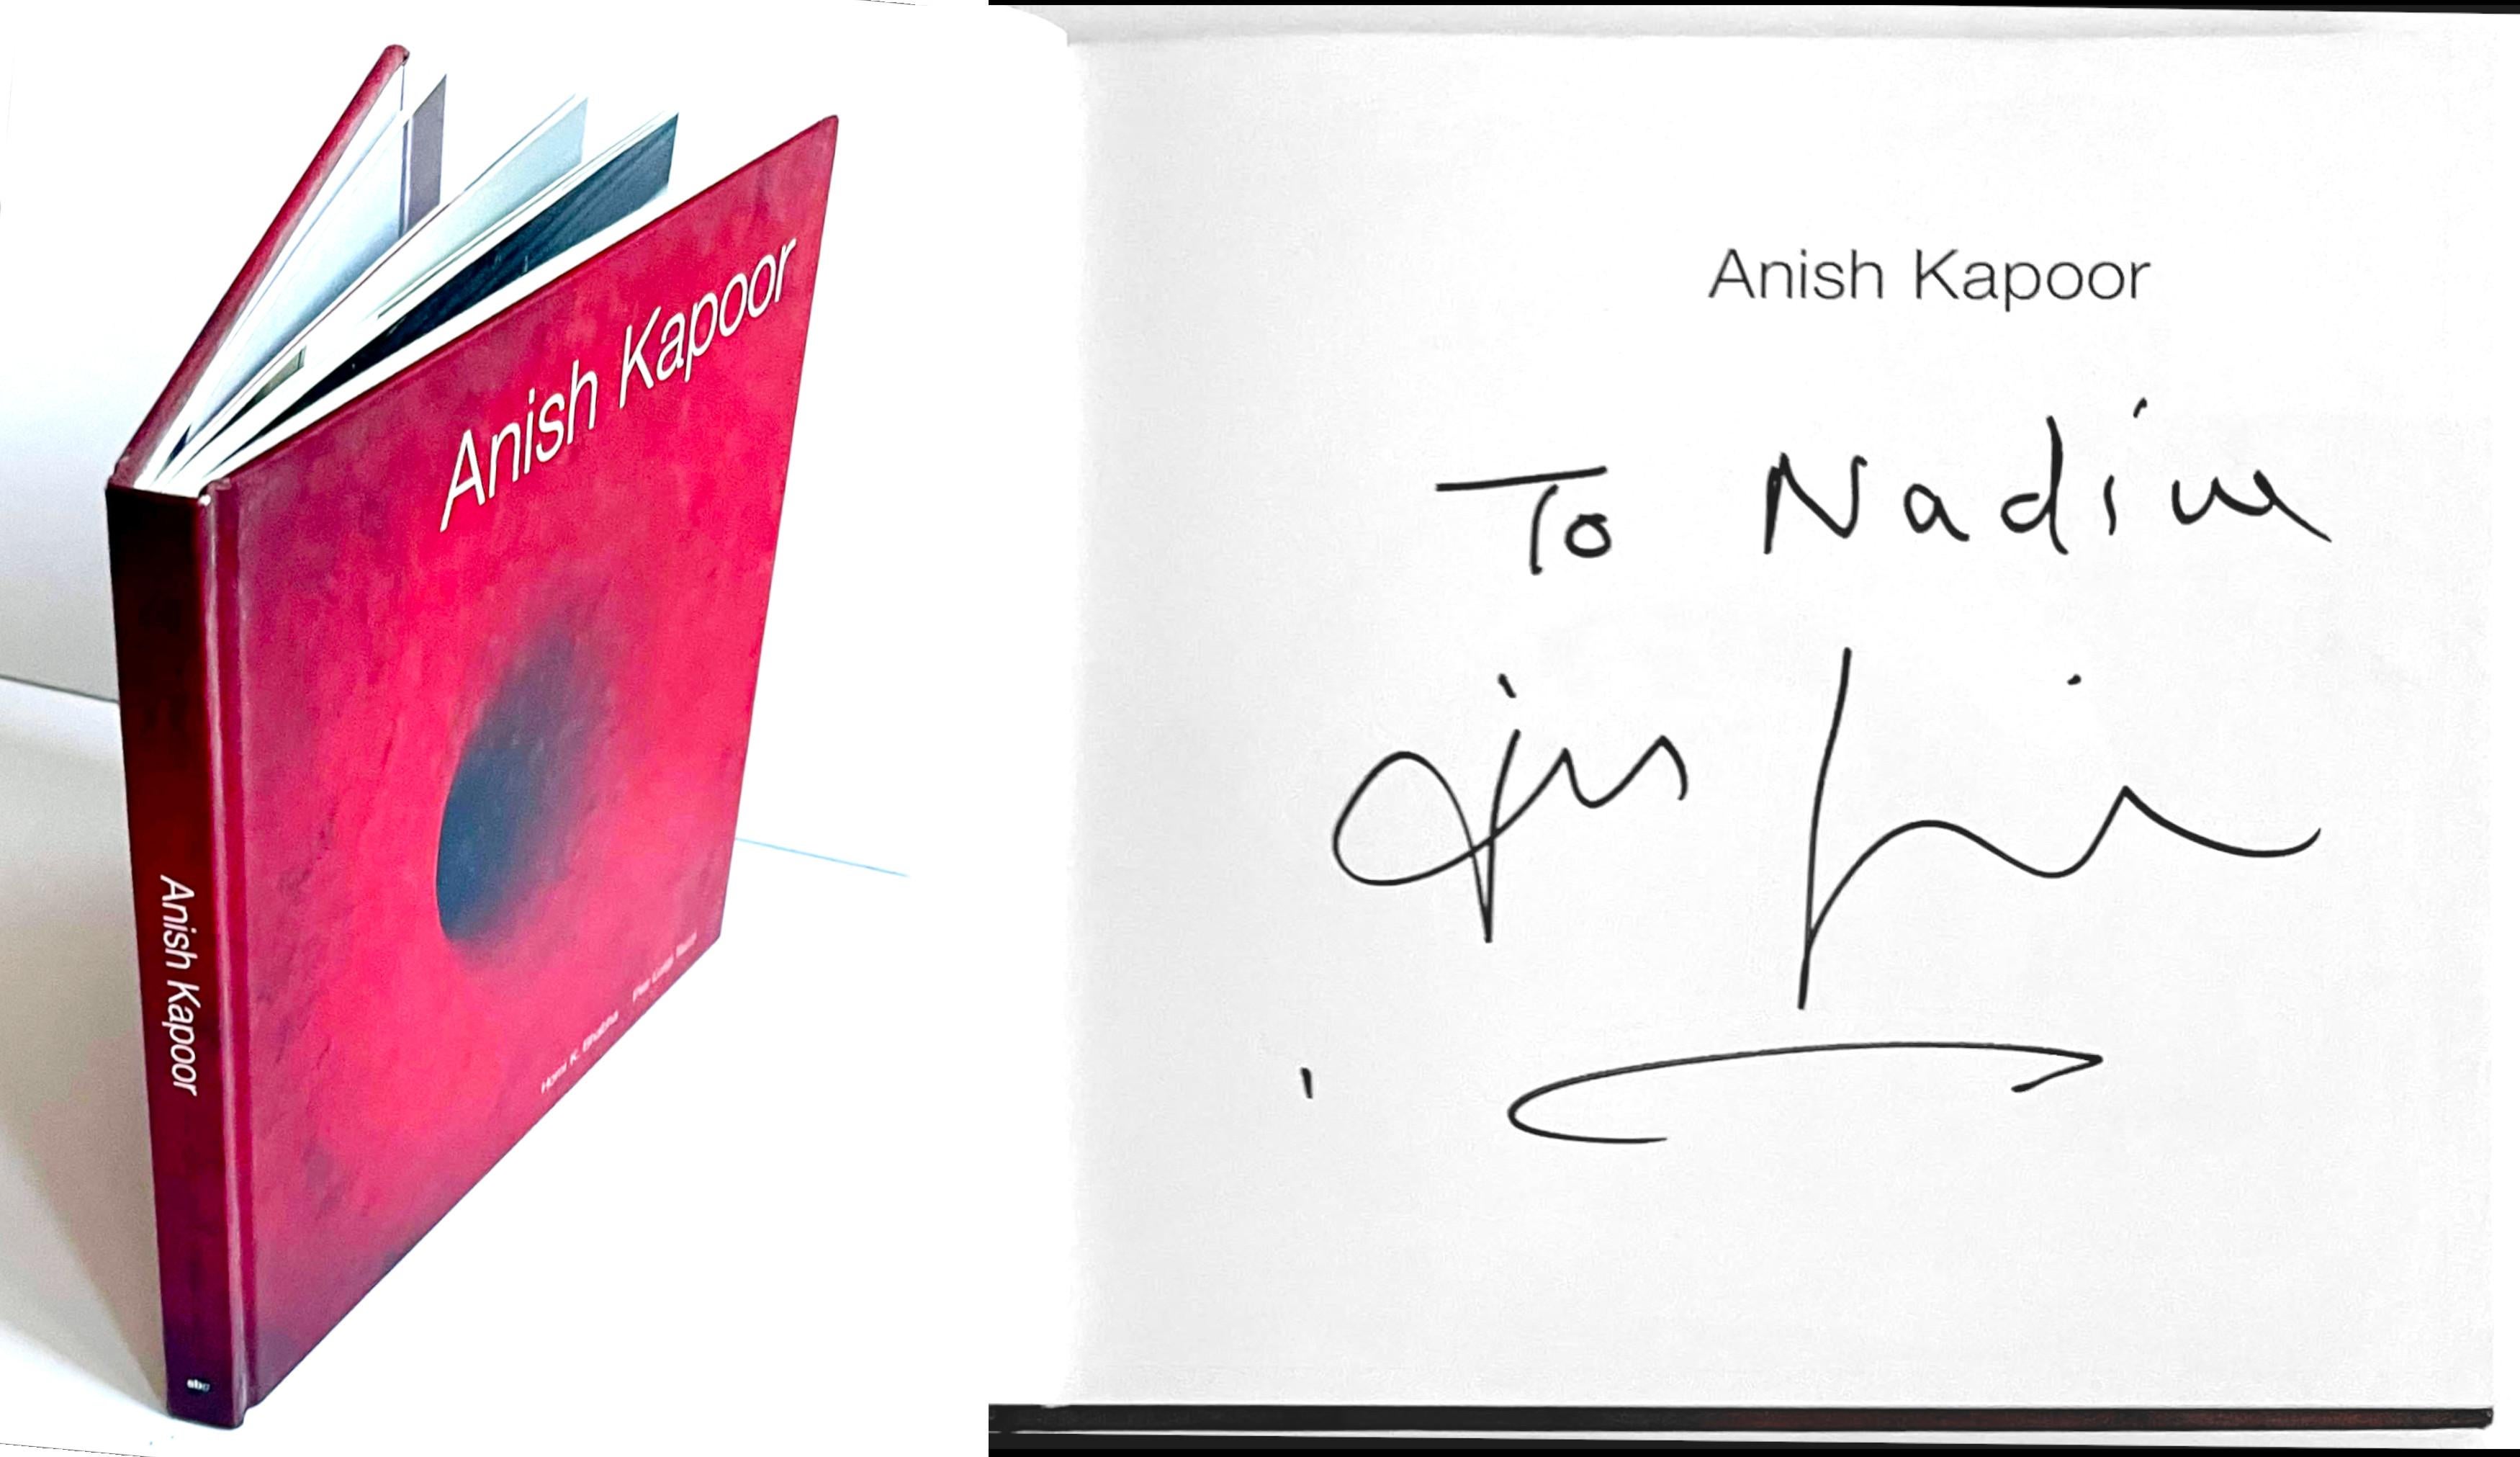 Monographe : Anish Kapoor (signée à la main et inscrite à Nadine par Anish Kapoor)